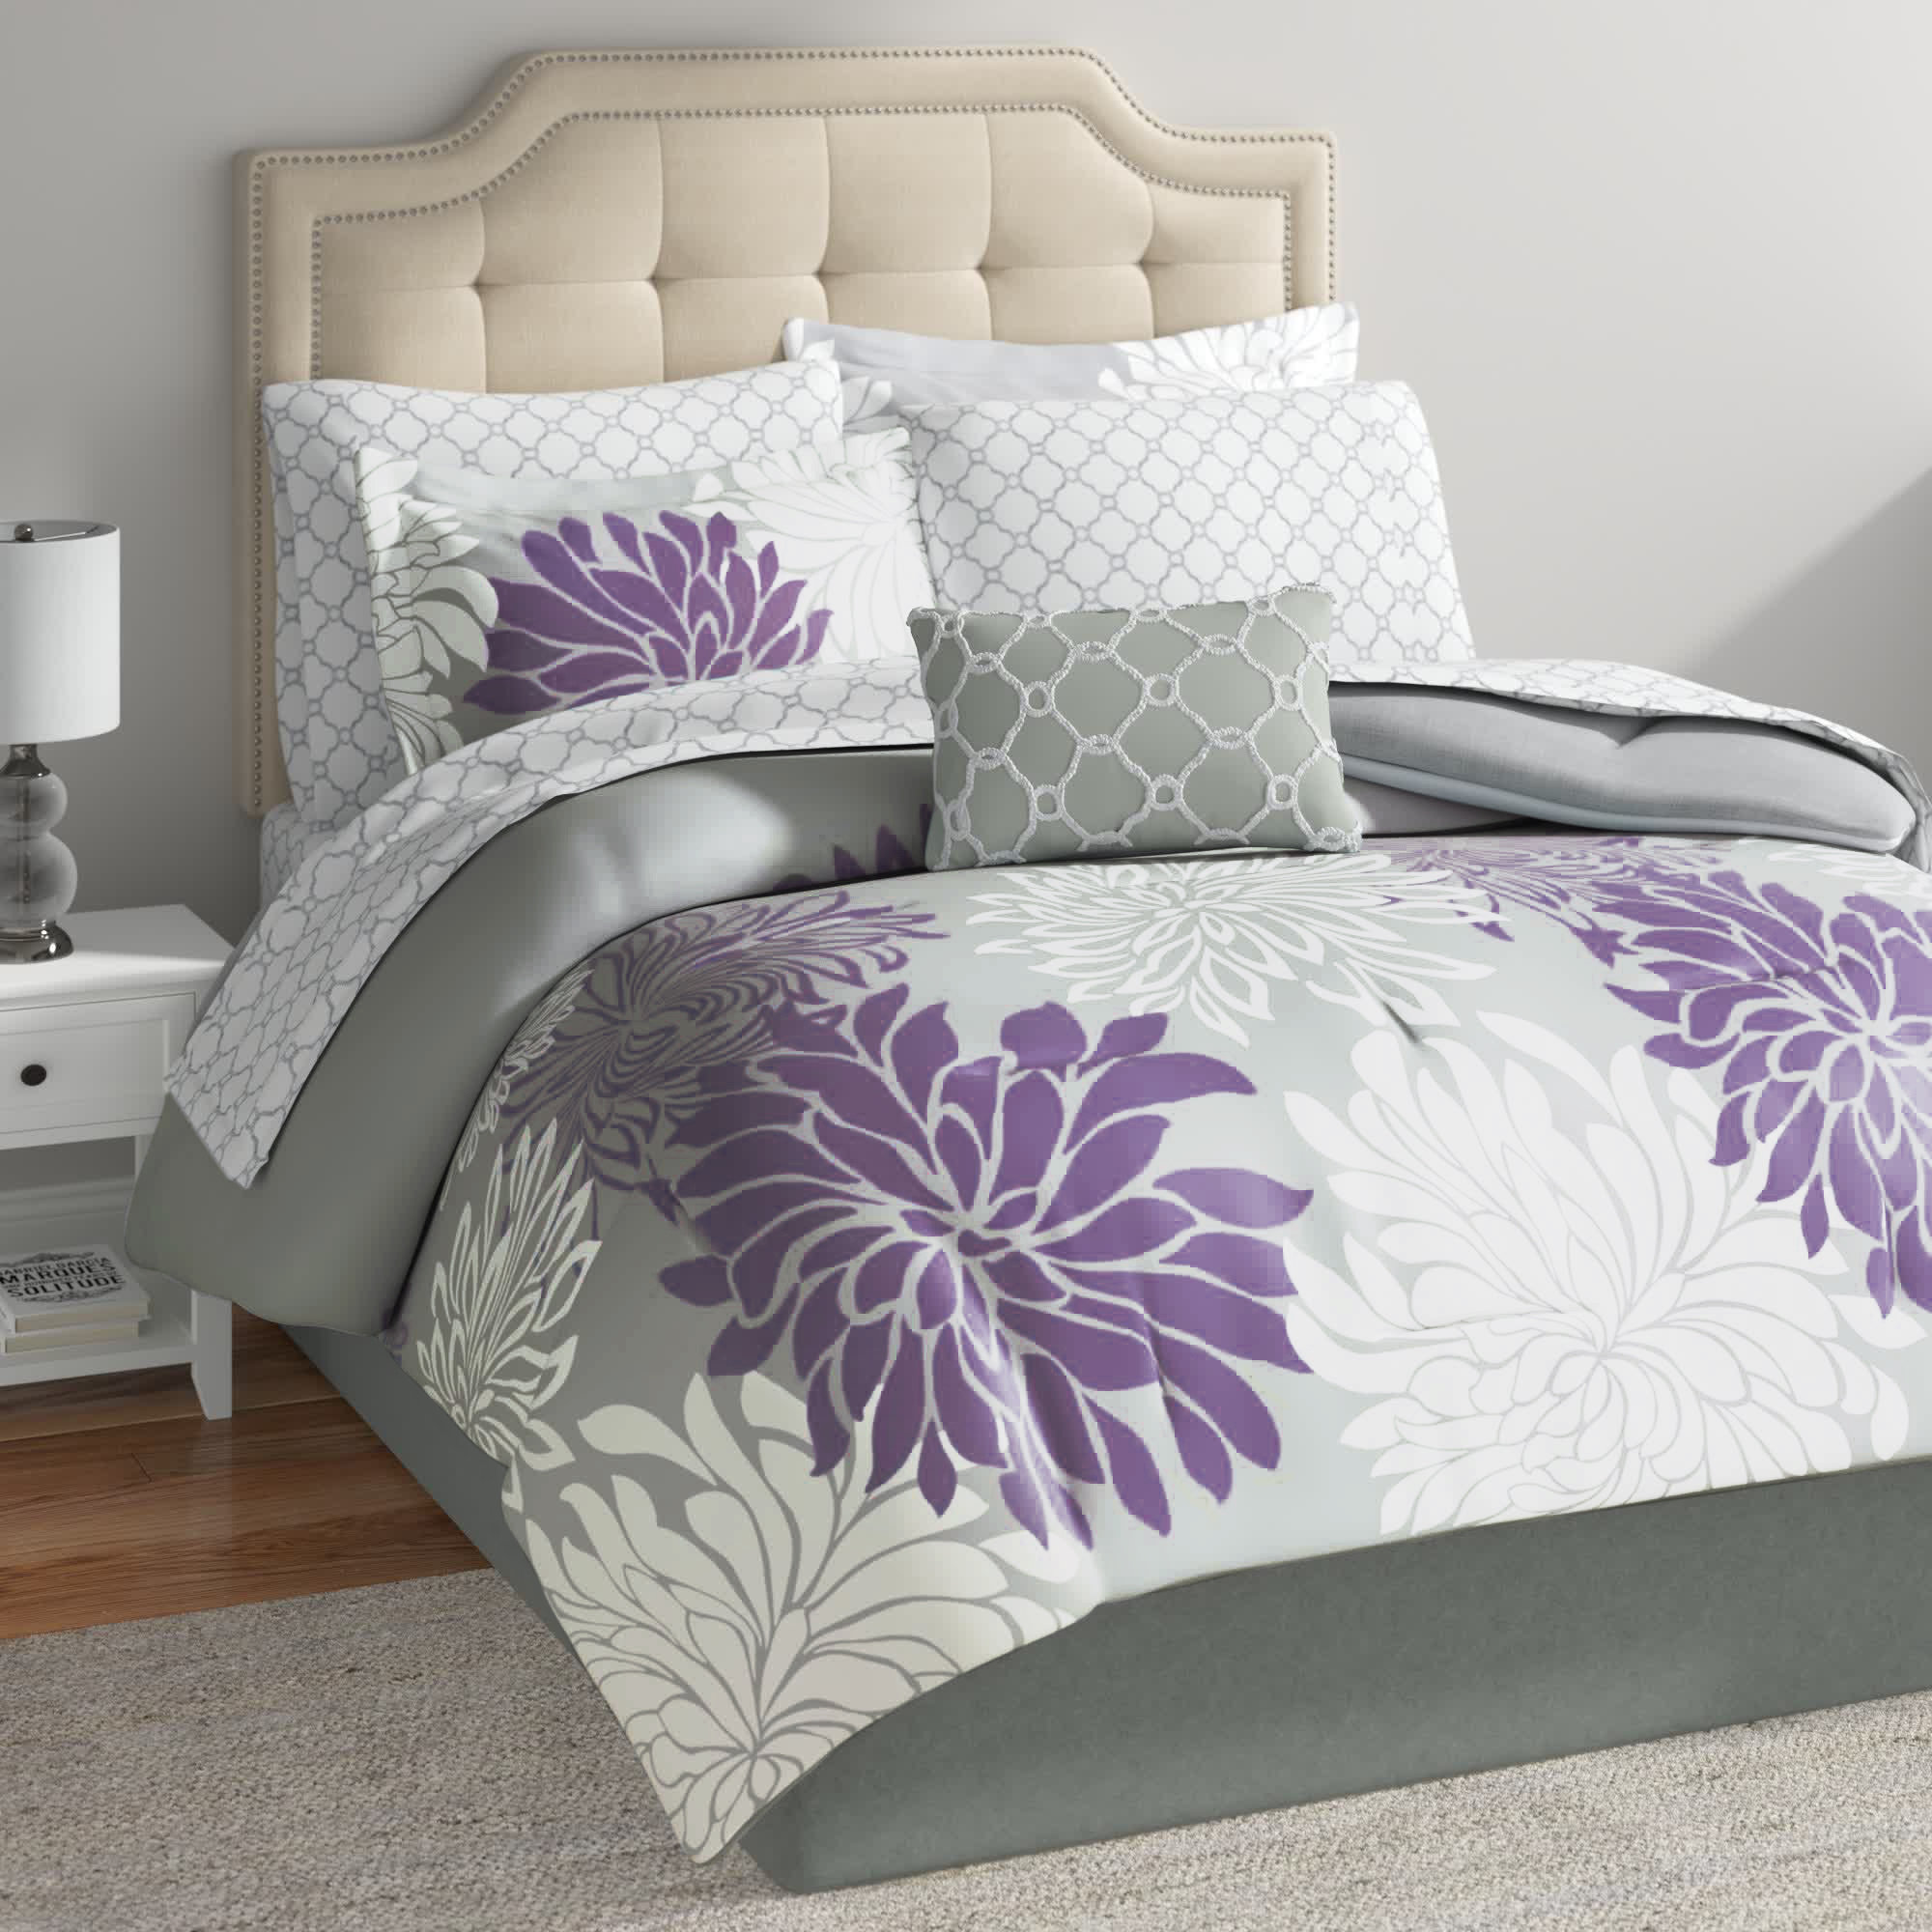 https://assets.wfcdn.com/im/48662517/compr-r85/2213/221371078/guthridge-microfiber-floral-comforter-set-with-cotton-bed-sheets.jpg